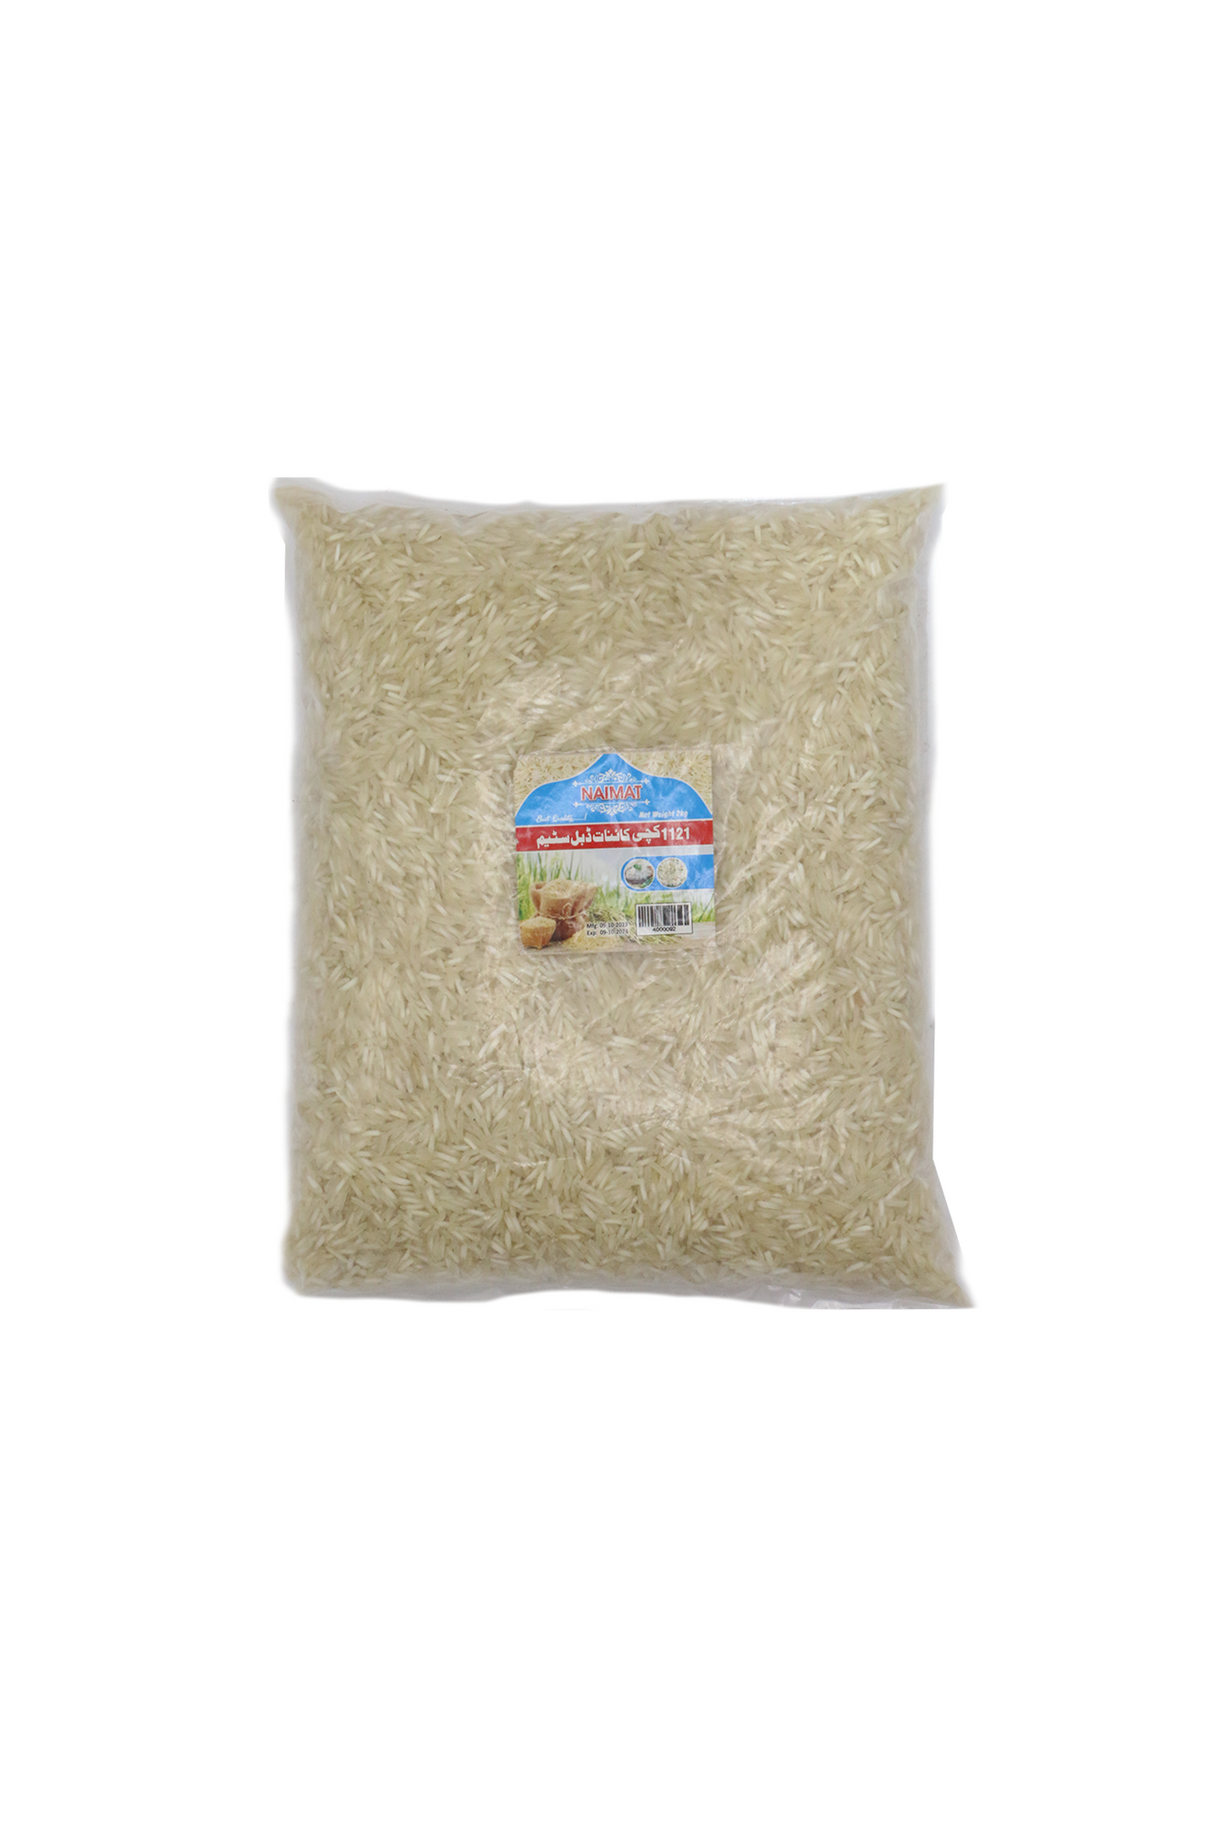 naimat rice kachi kainat 2kg